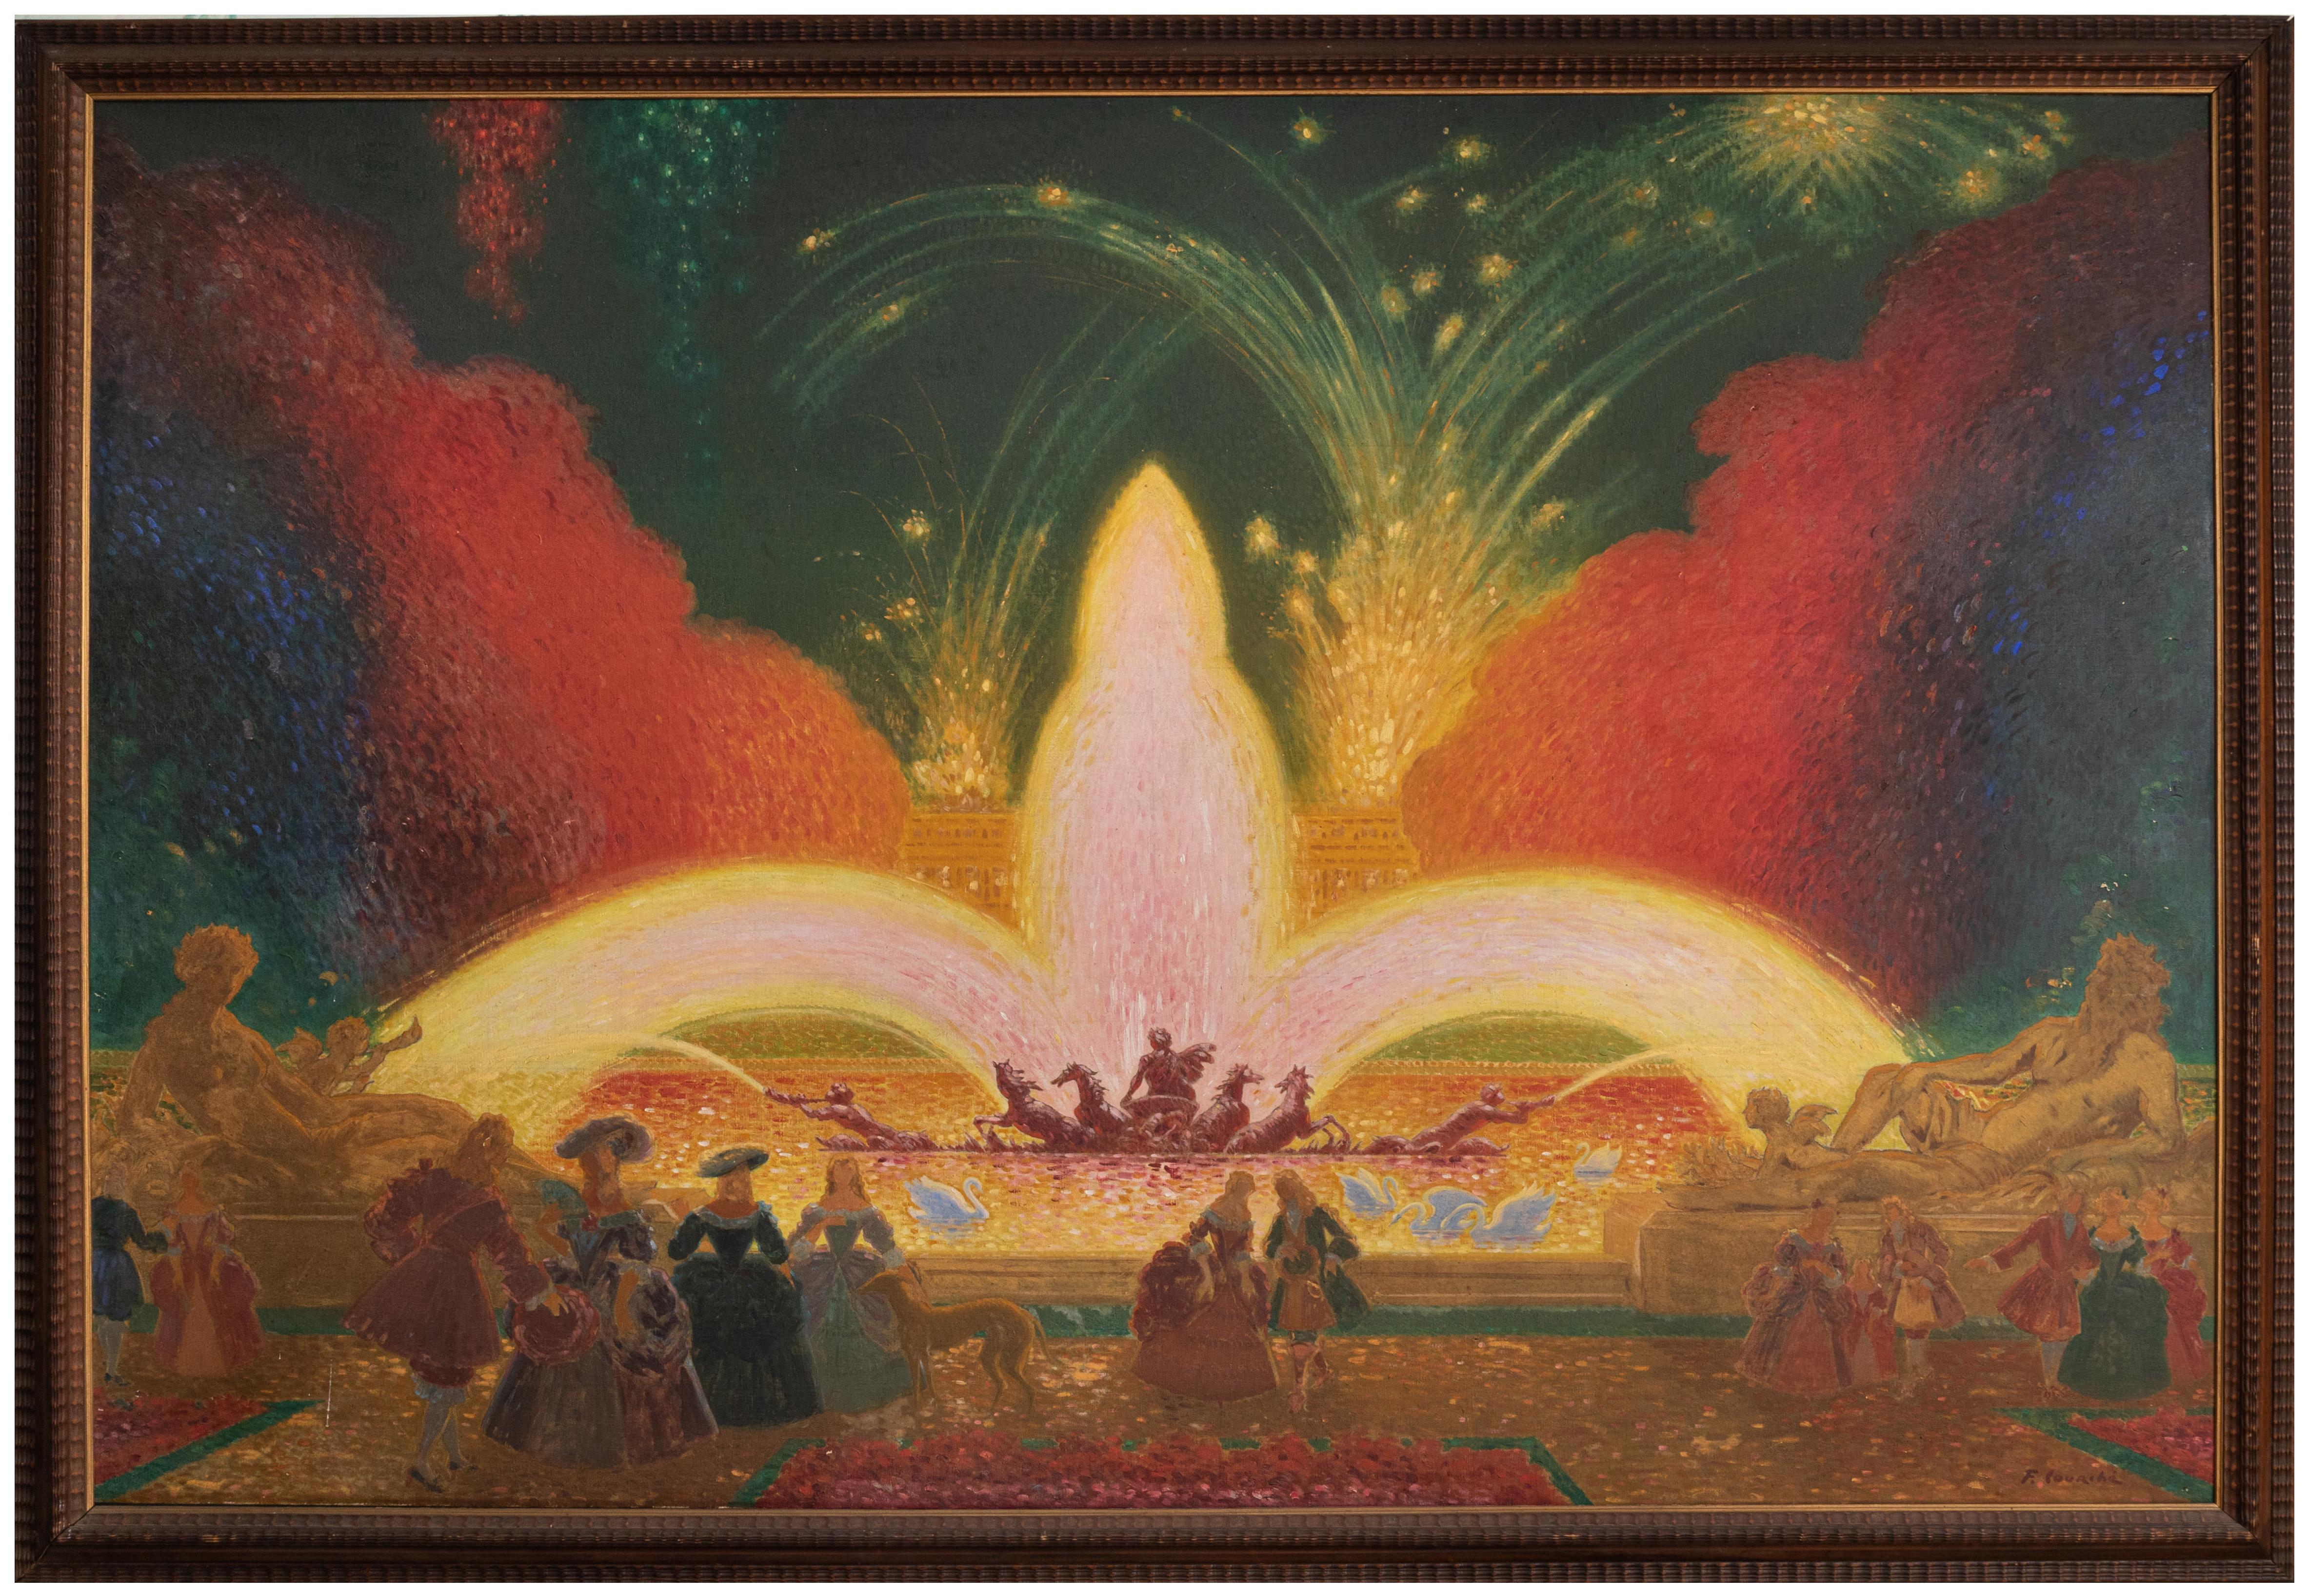 sehr große Öl auf Leinwand Gemälde von Felix Courché (1863-1944) - 160x230cm

Datiert 1936 und betitelt mit 